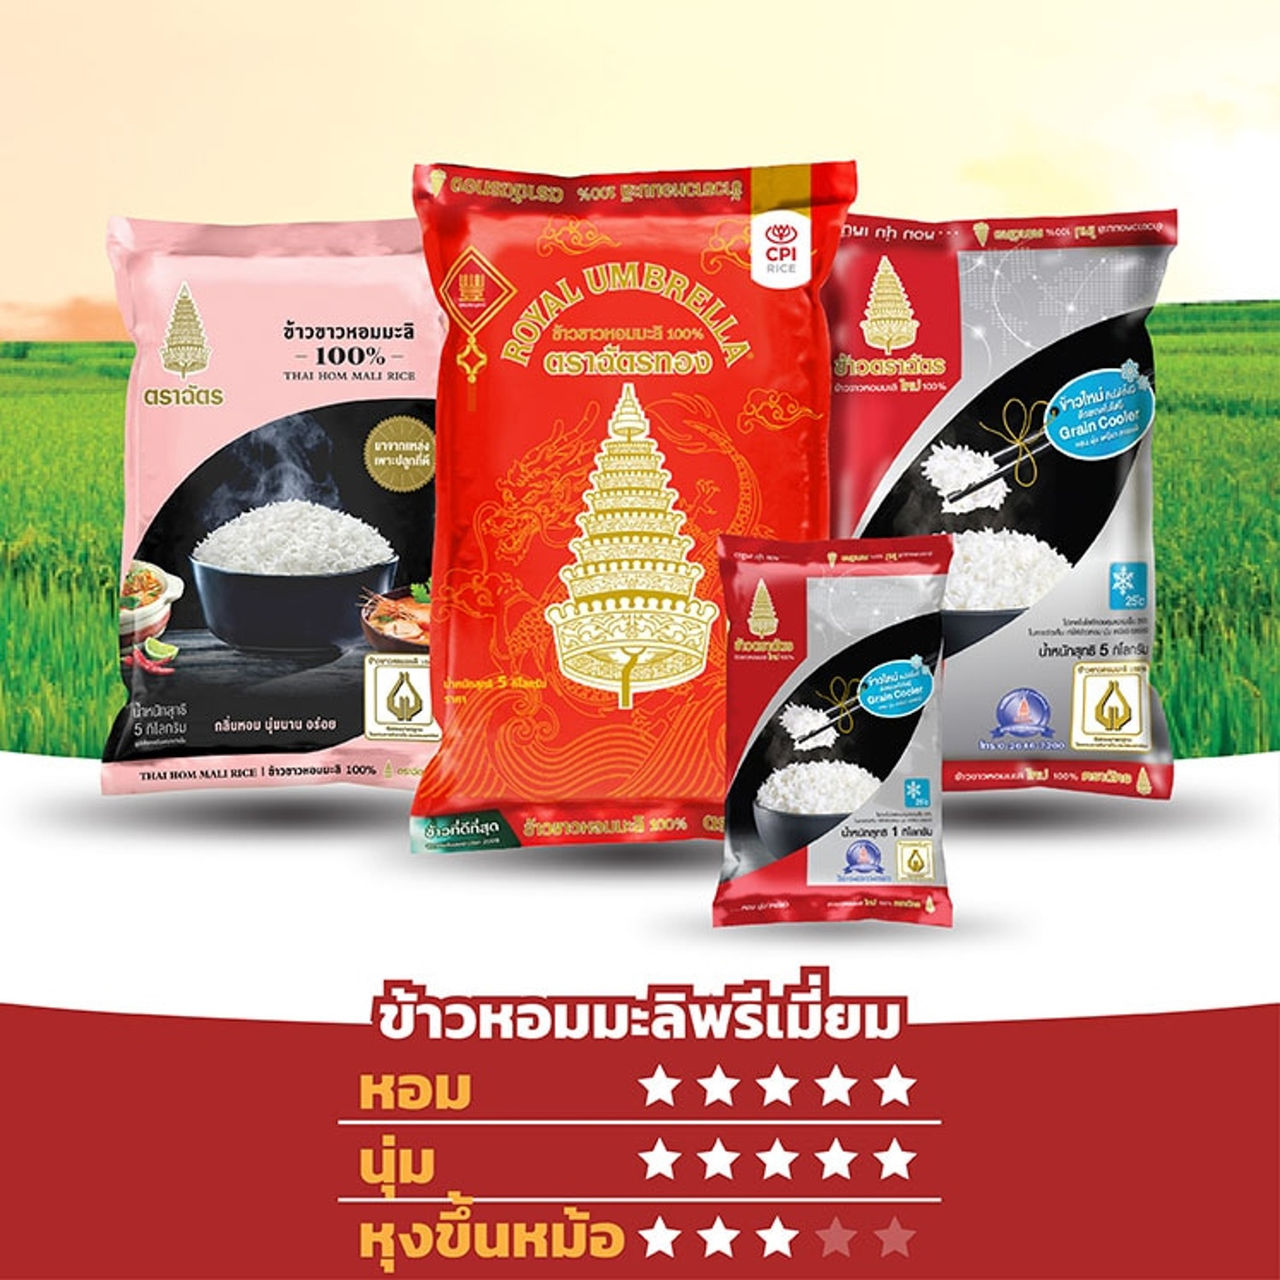 royal-umbrella-premium-rice